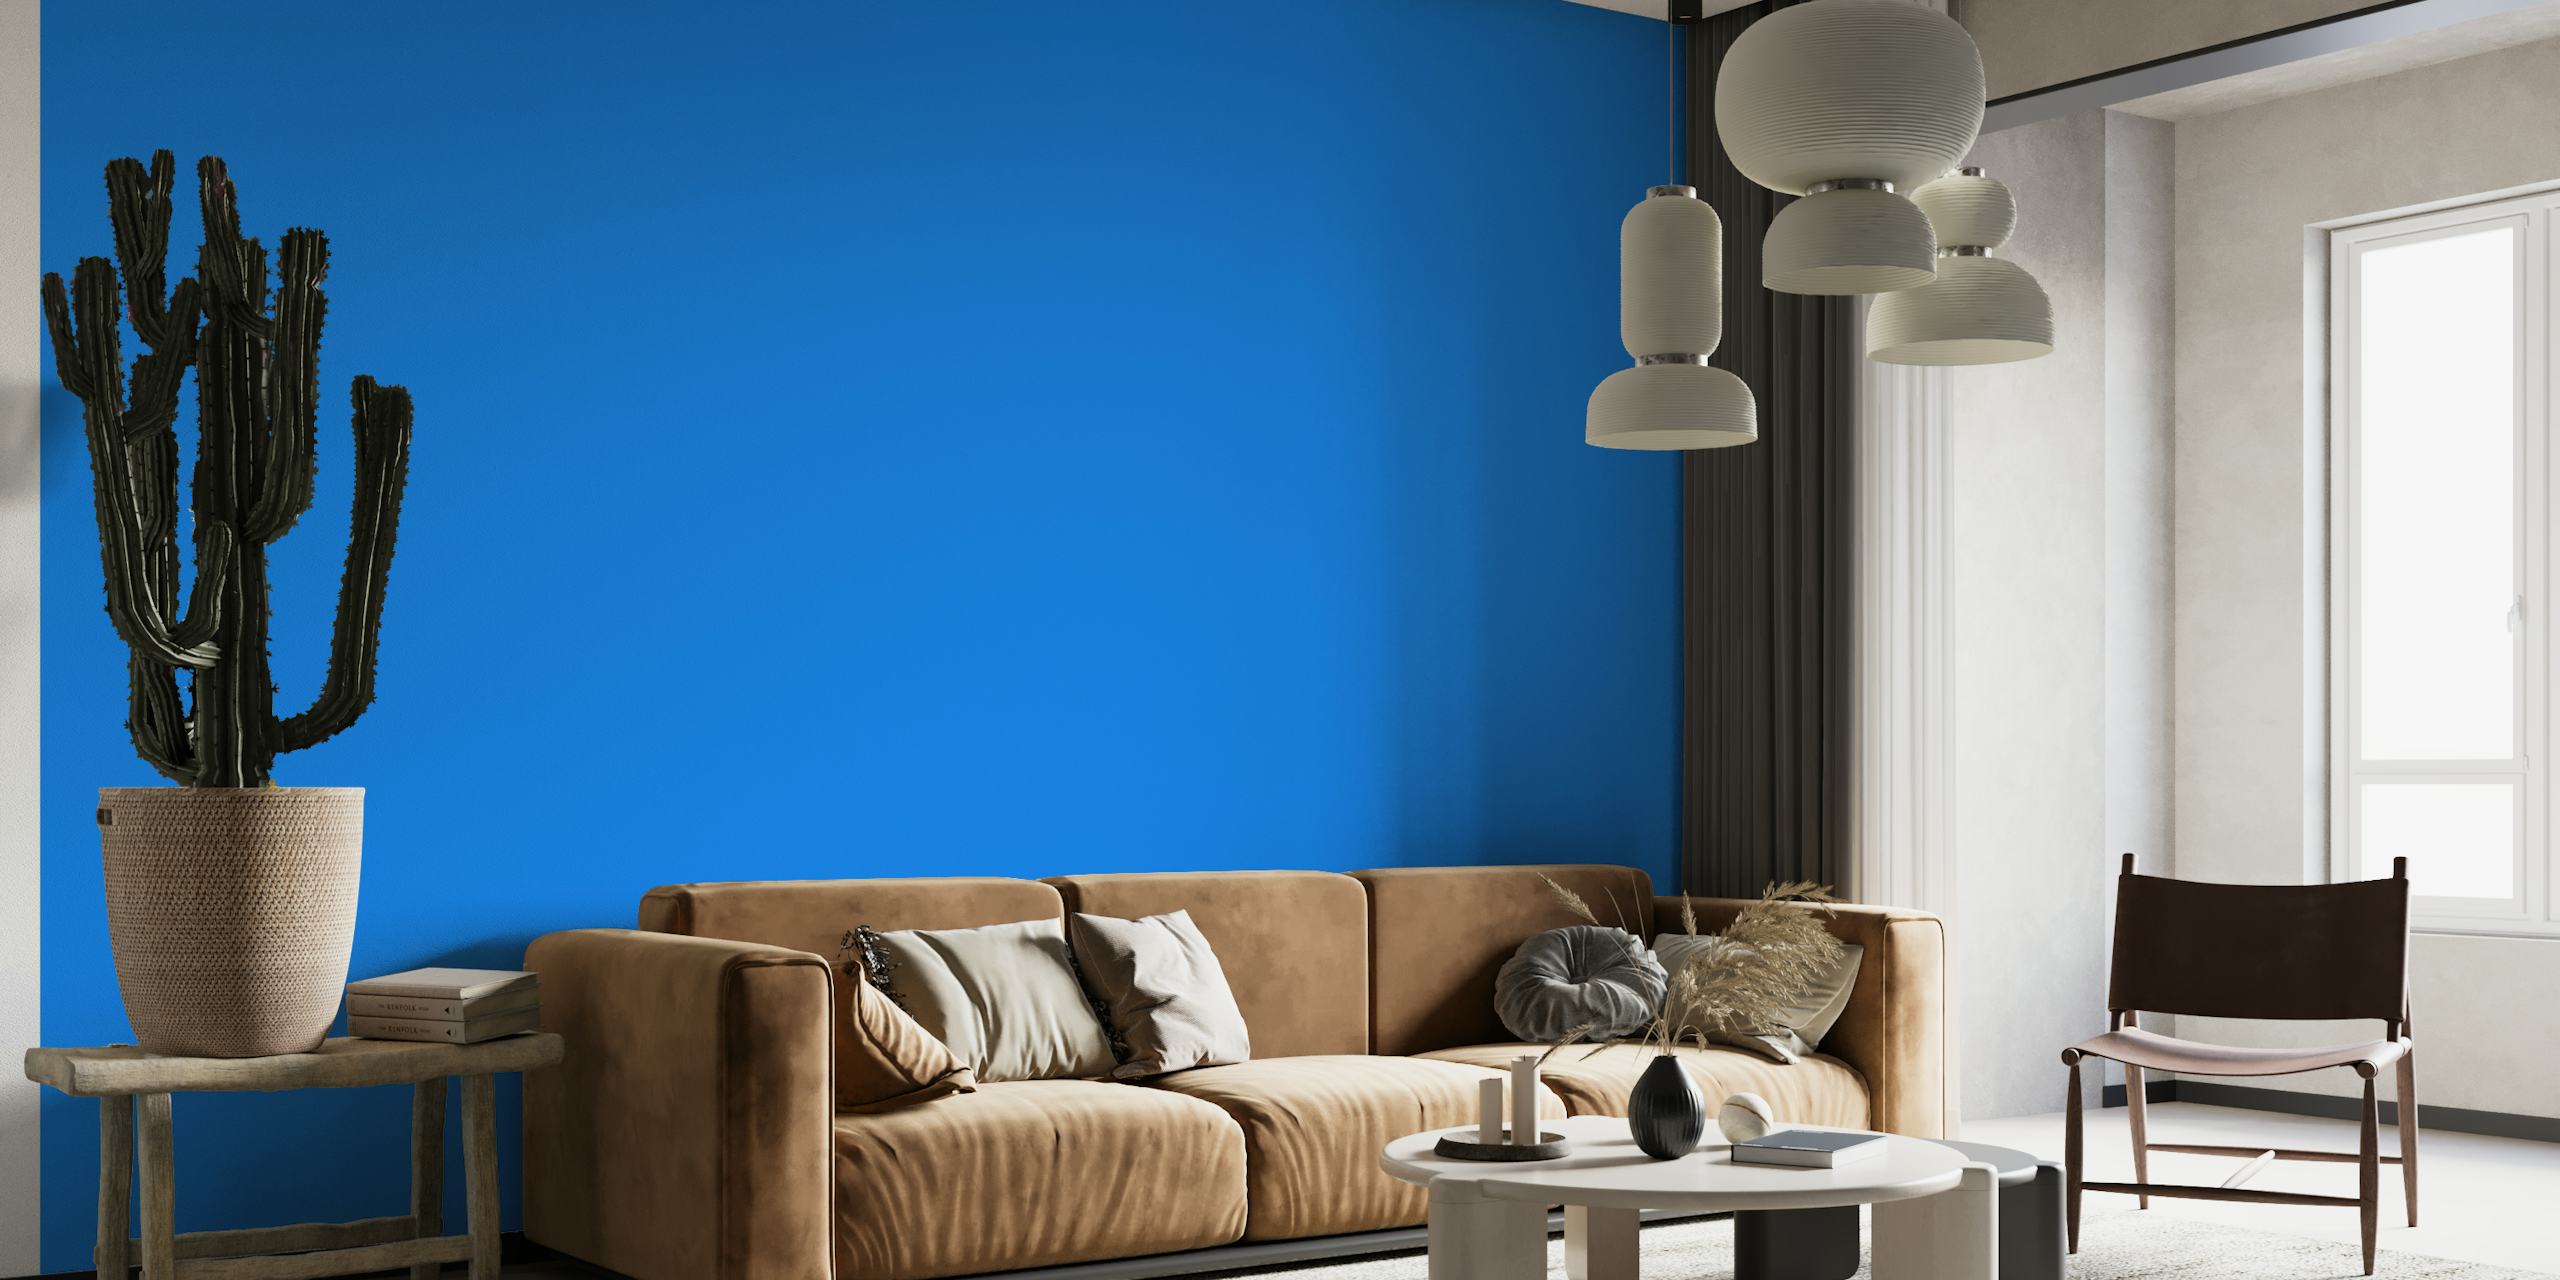 Azure Blue wallpaper